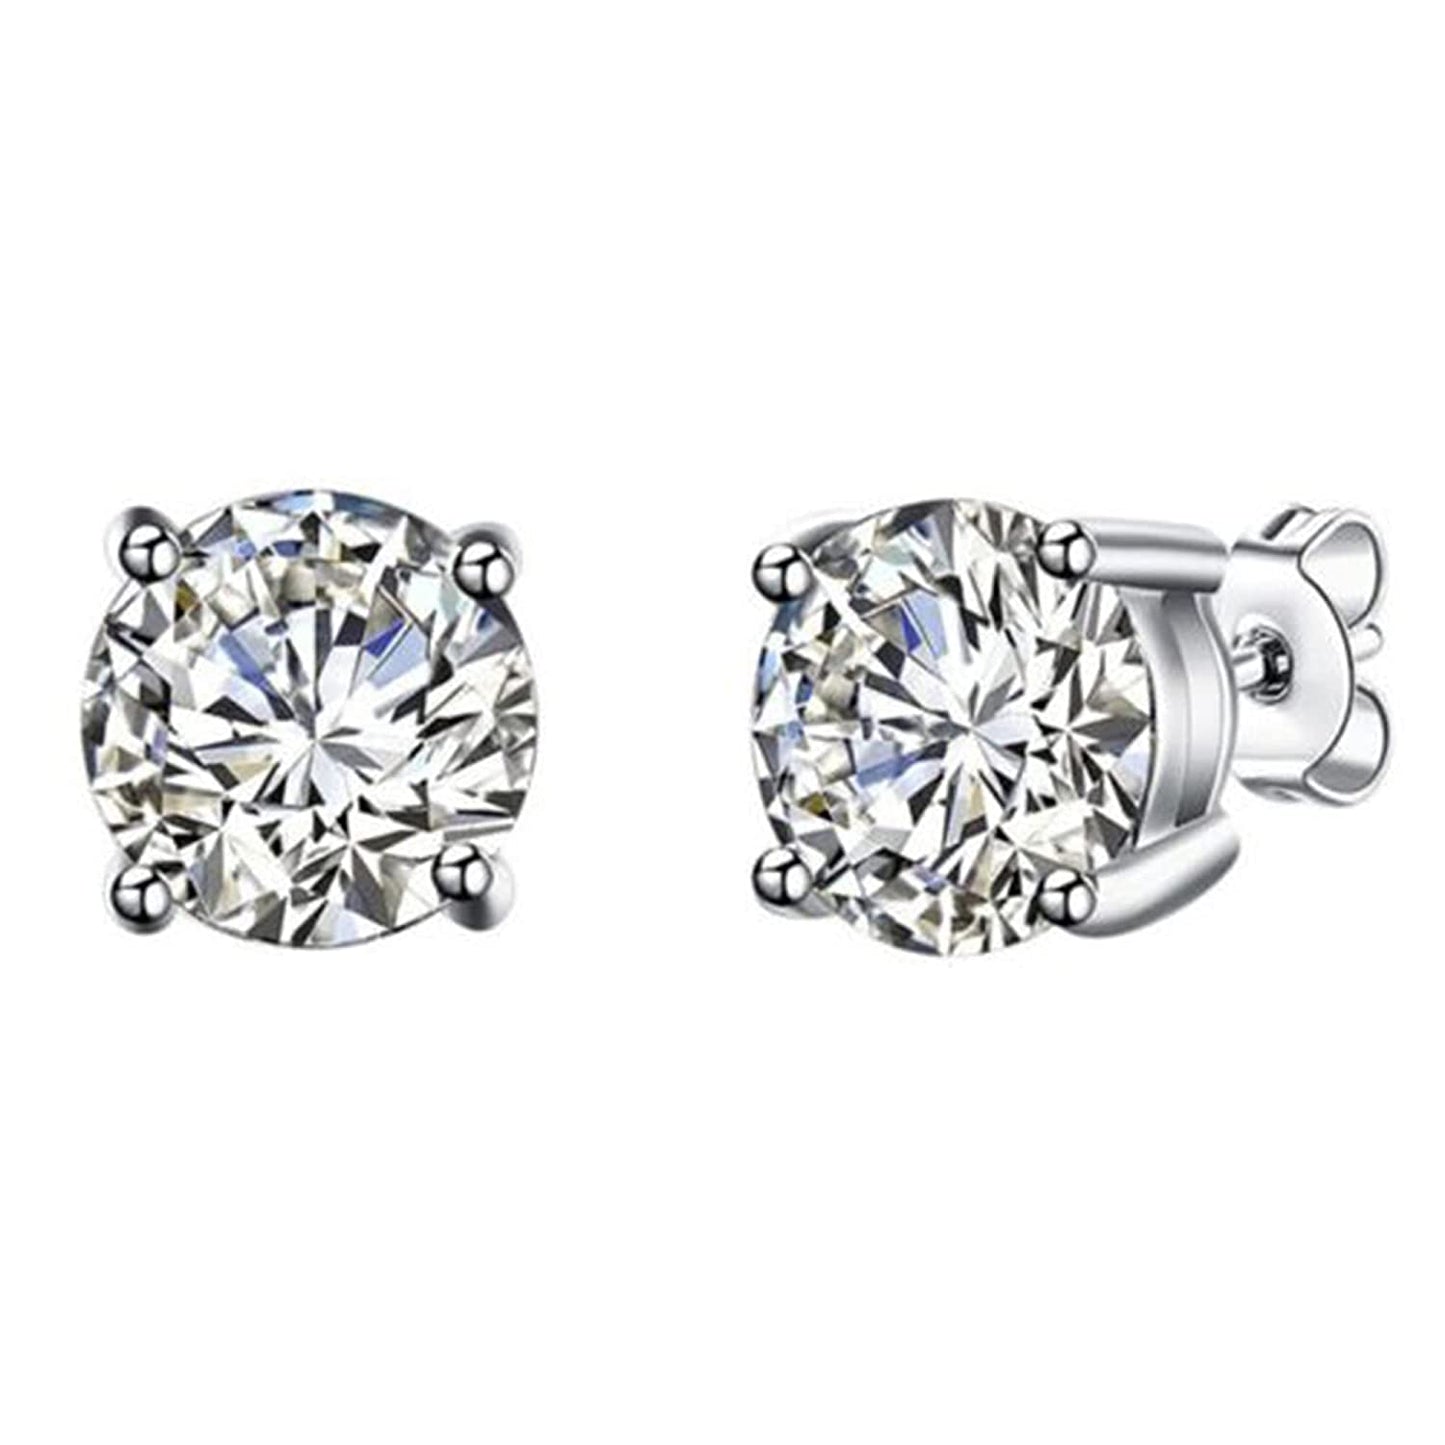 Crystalline Swarovski Diamond Stud Earrings